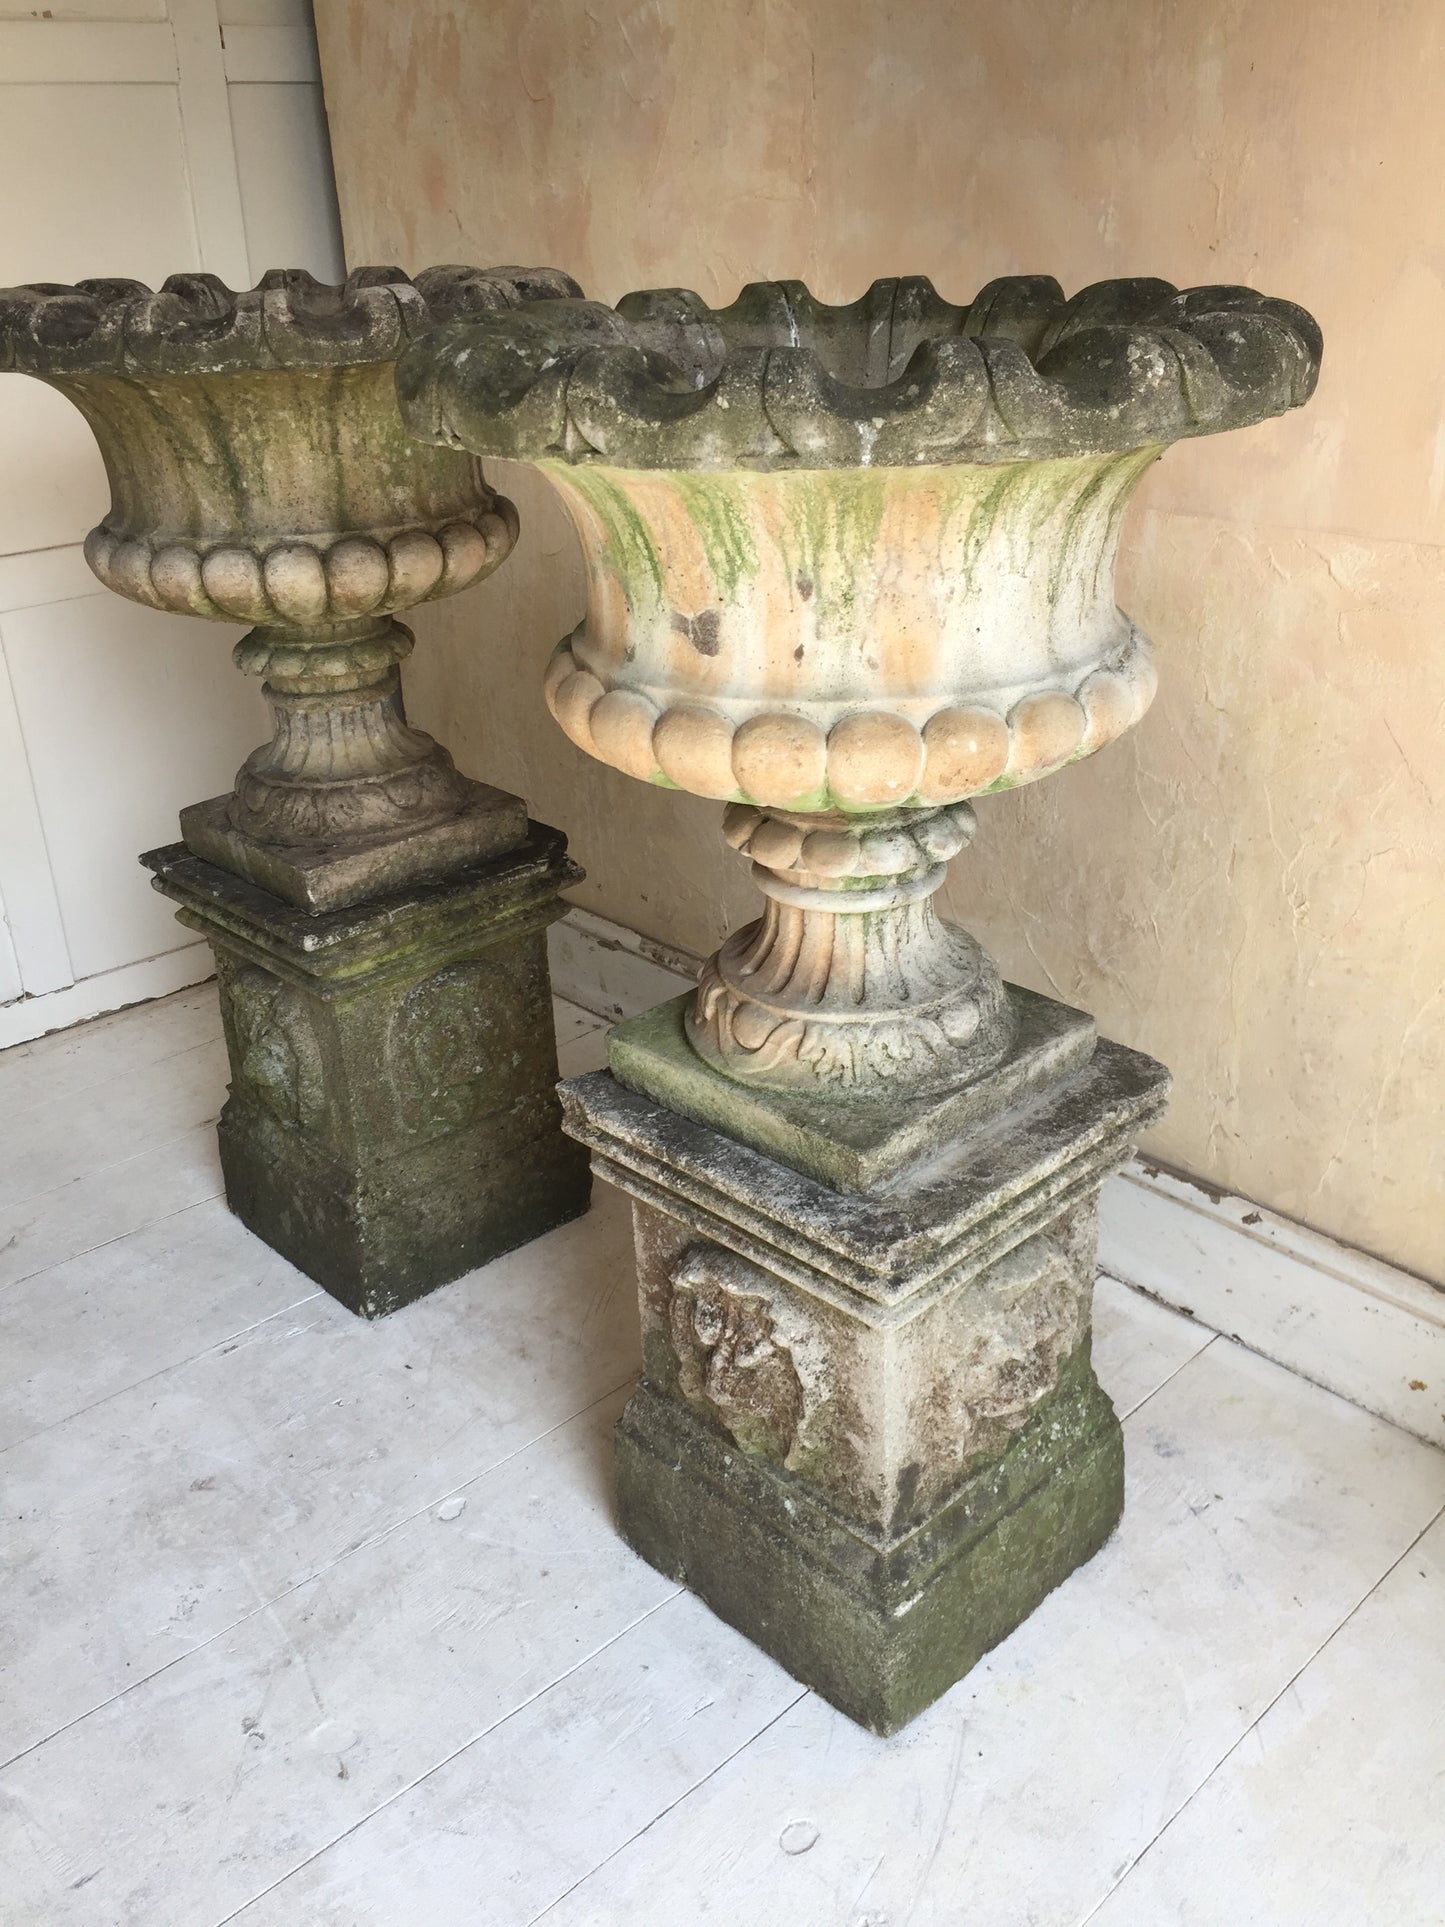 Pair Of Urns On Pedestals